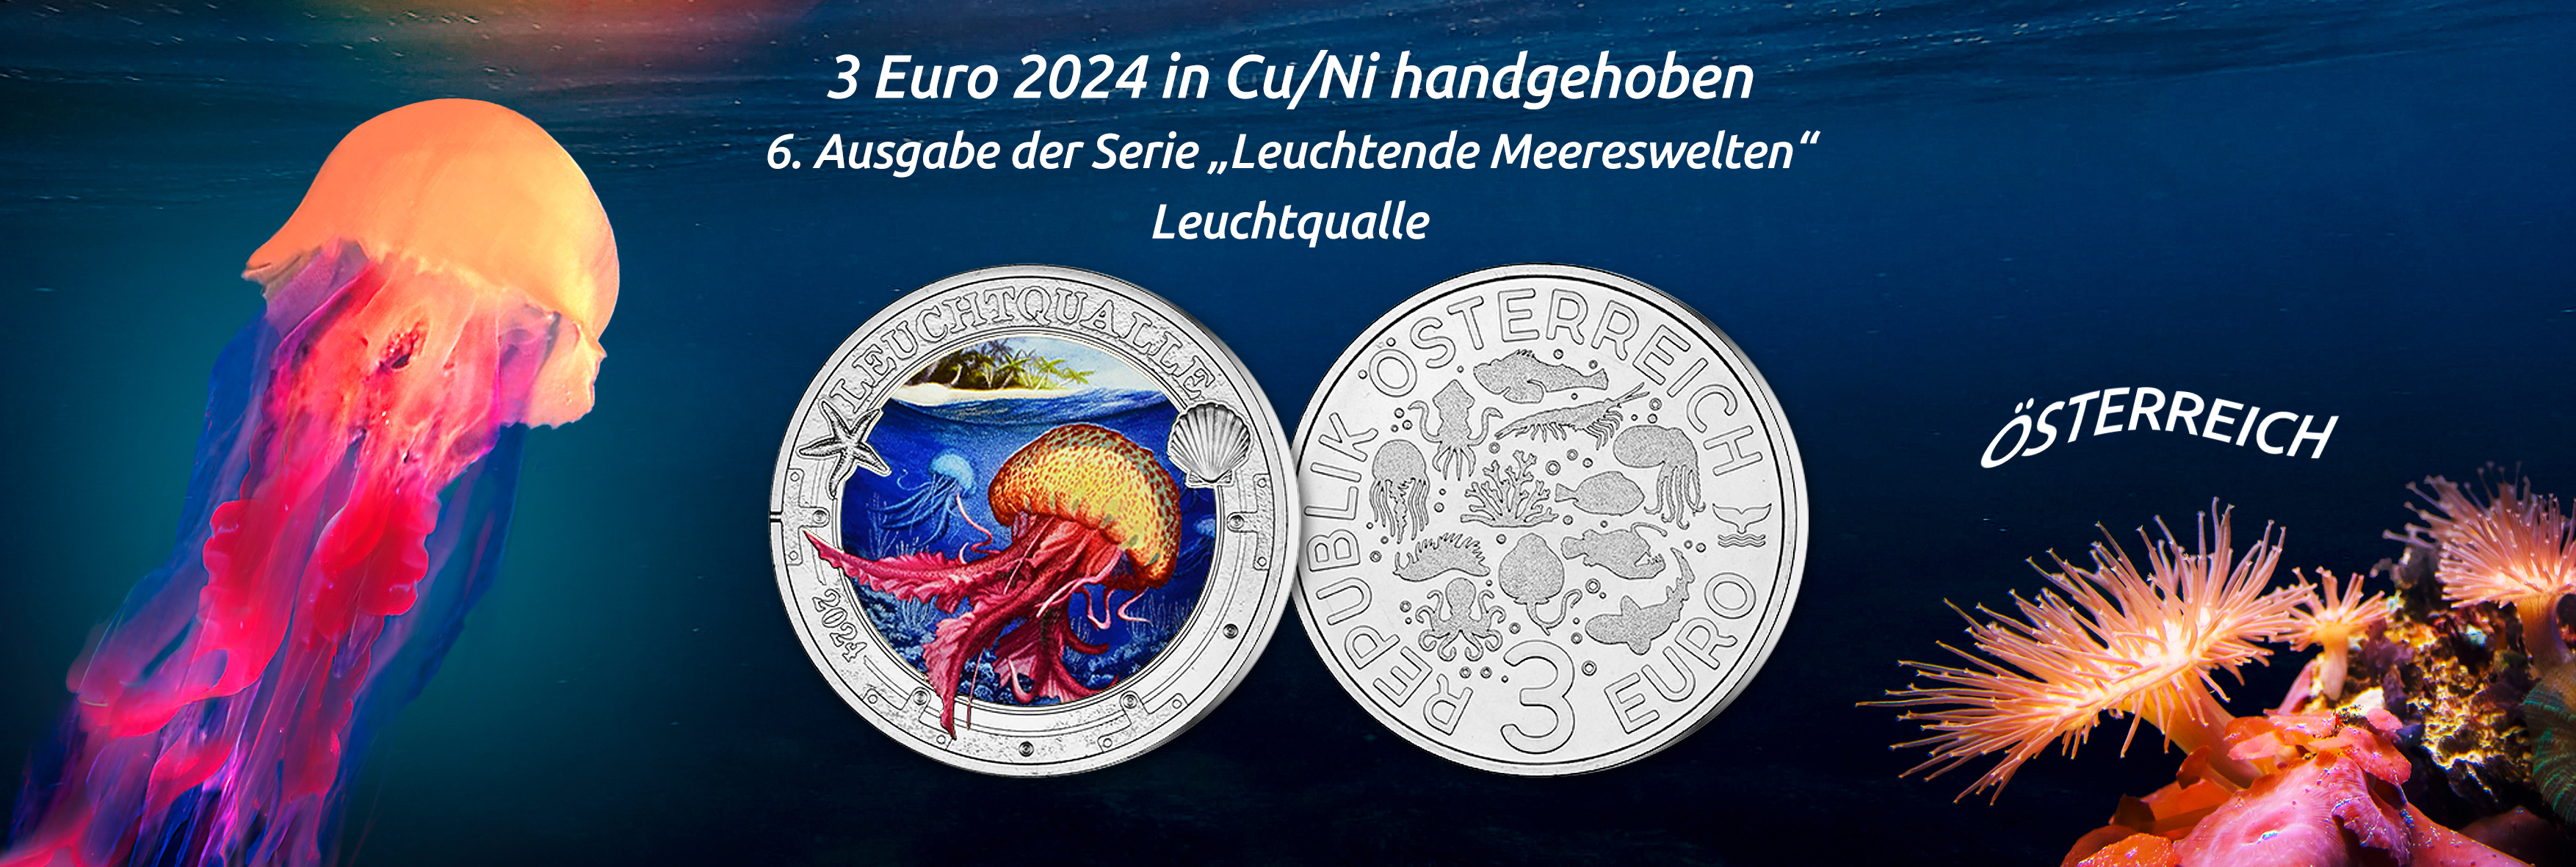 Österreich - 3 Euro Gedenkmünze 2024 in Cu/Ni handgehoben, Leuchtende Meereswelten, 6. Ausgabe Leuchtqualle